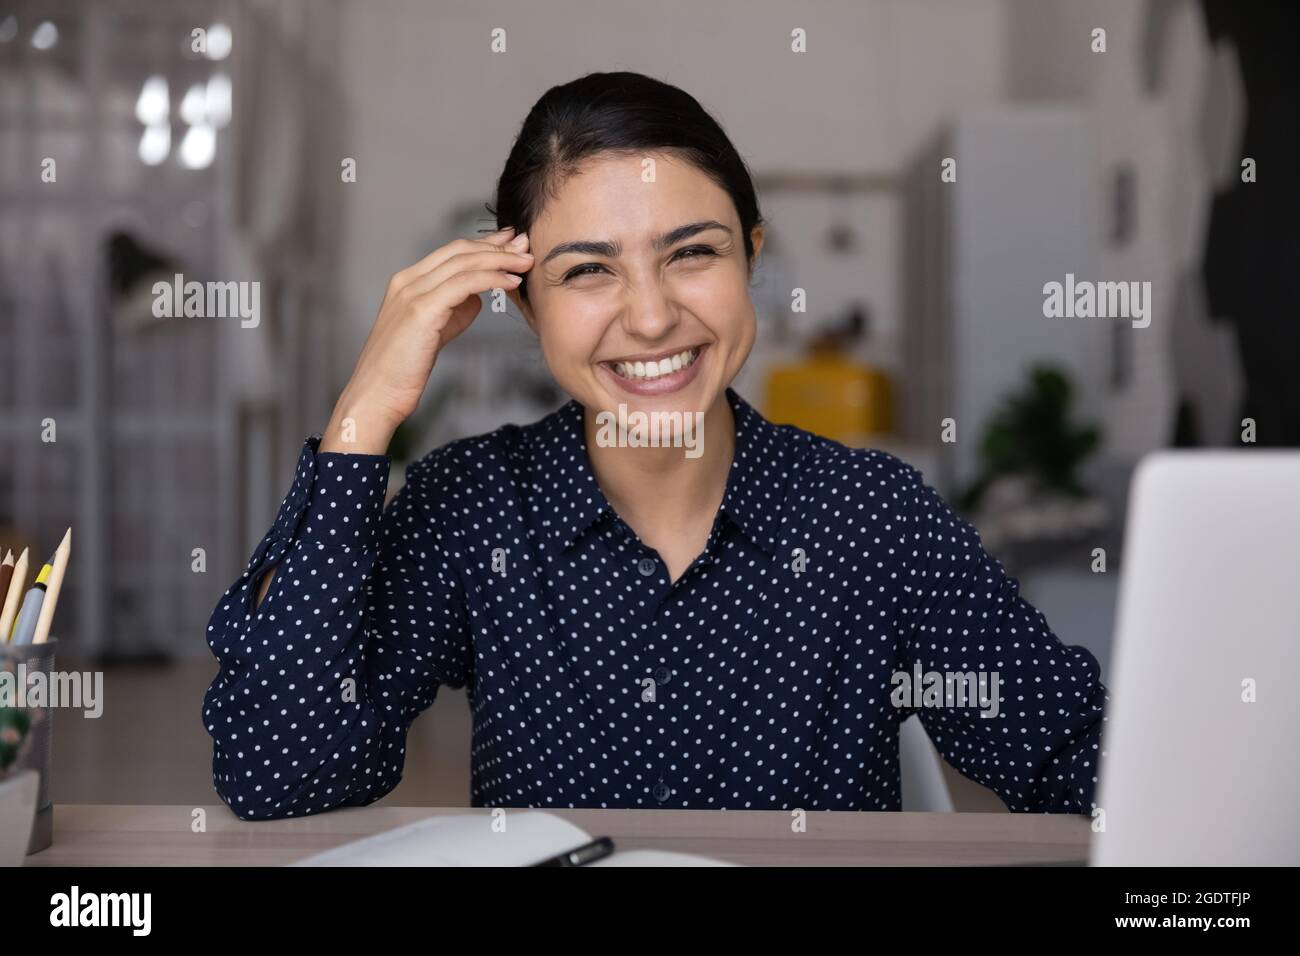 Portrait d'une femme indienne souriante travaillant sur un ordinateur portable Banque D'Images